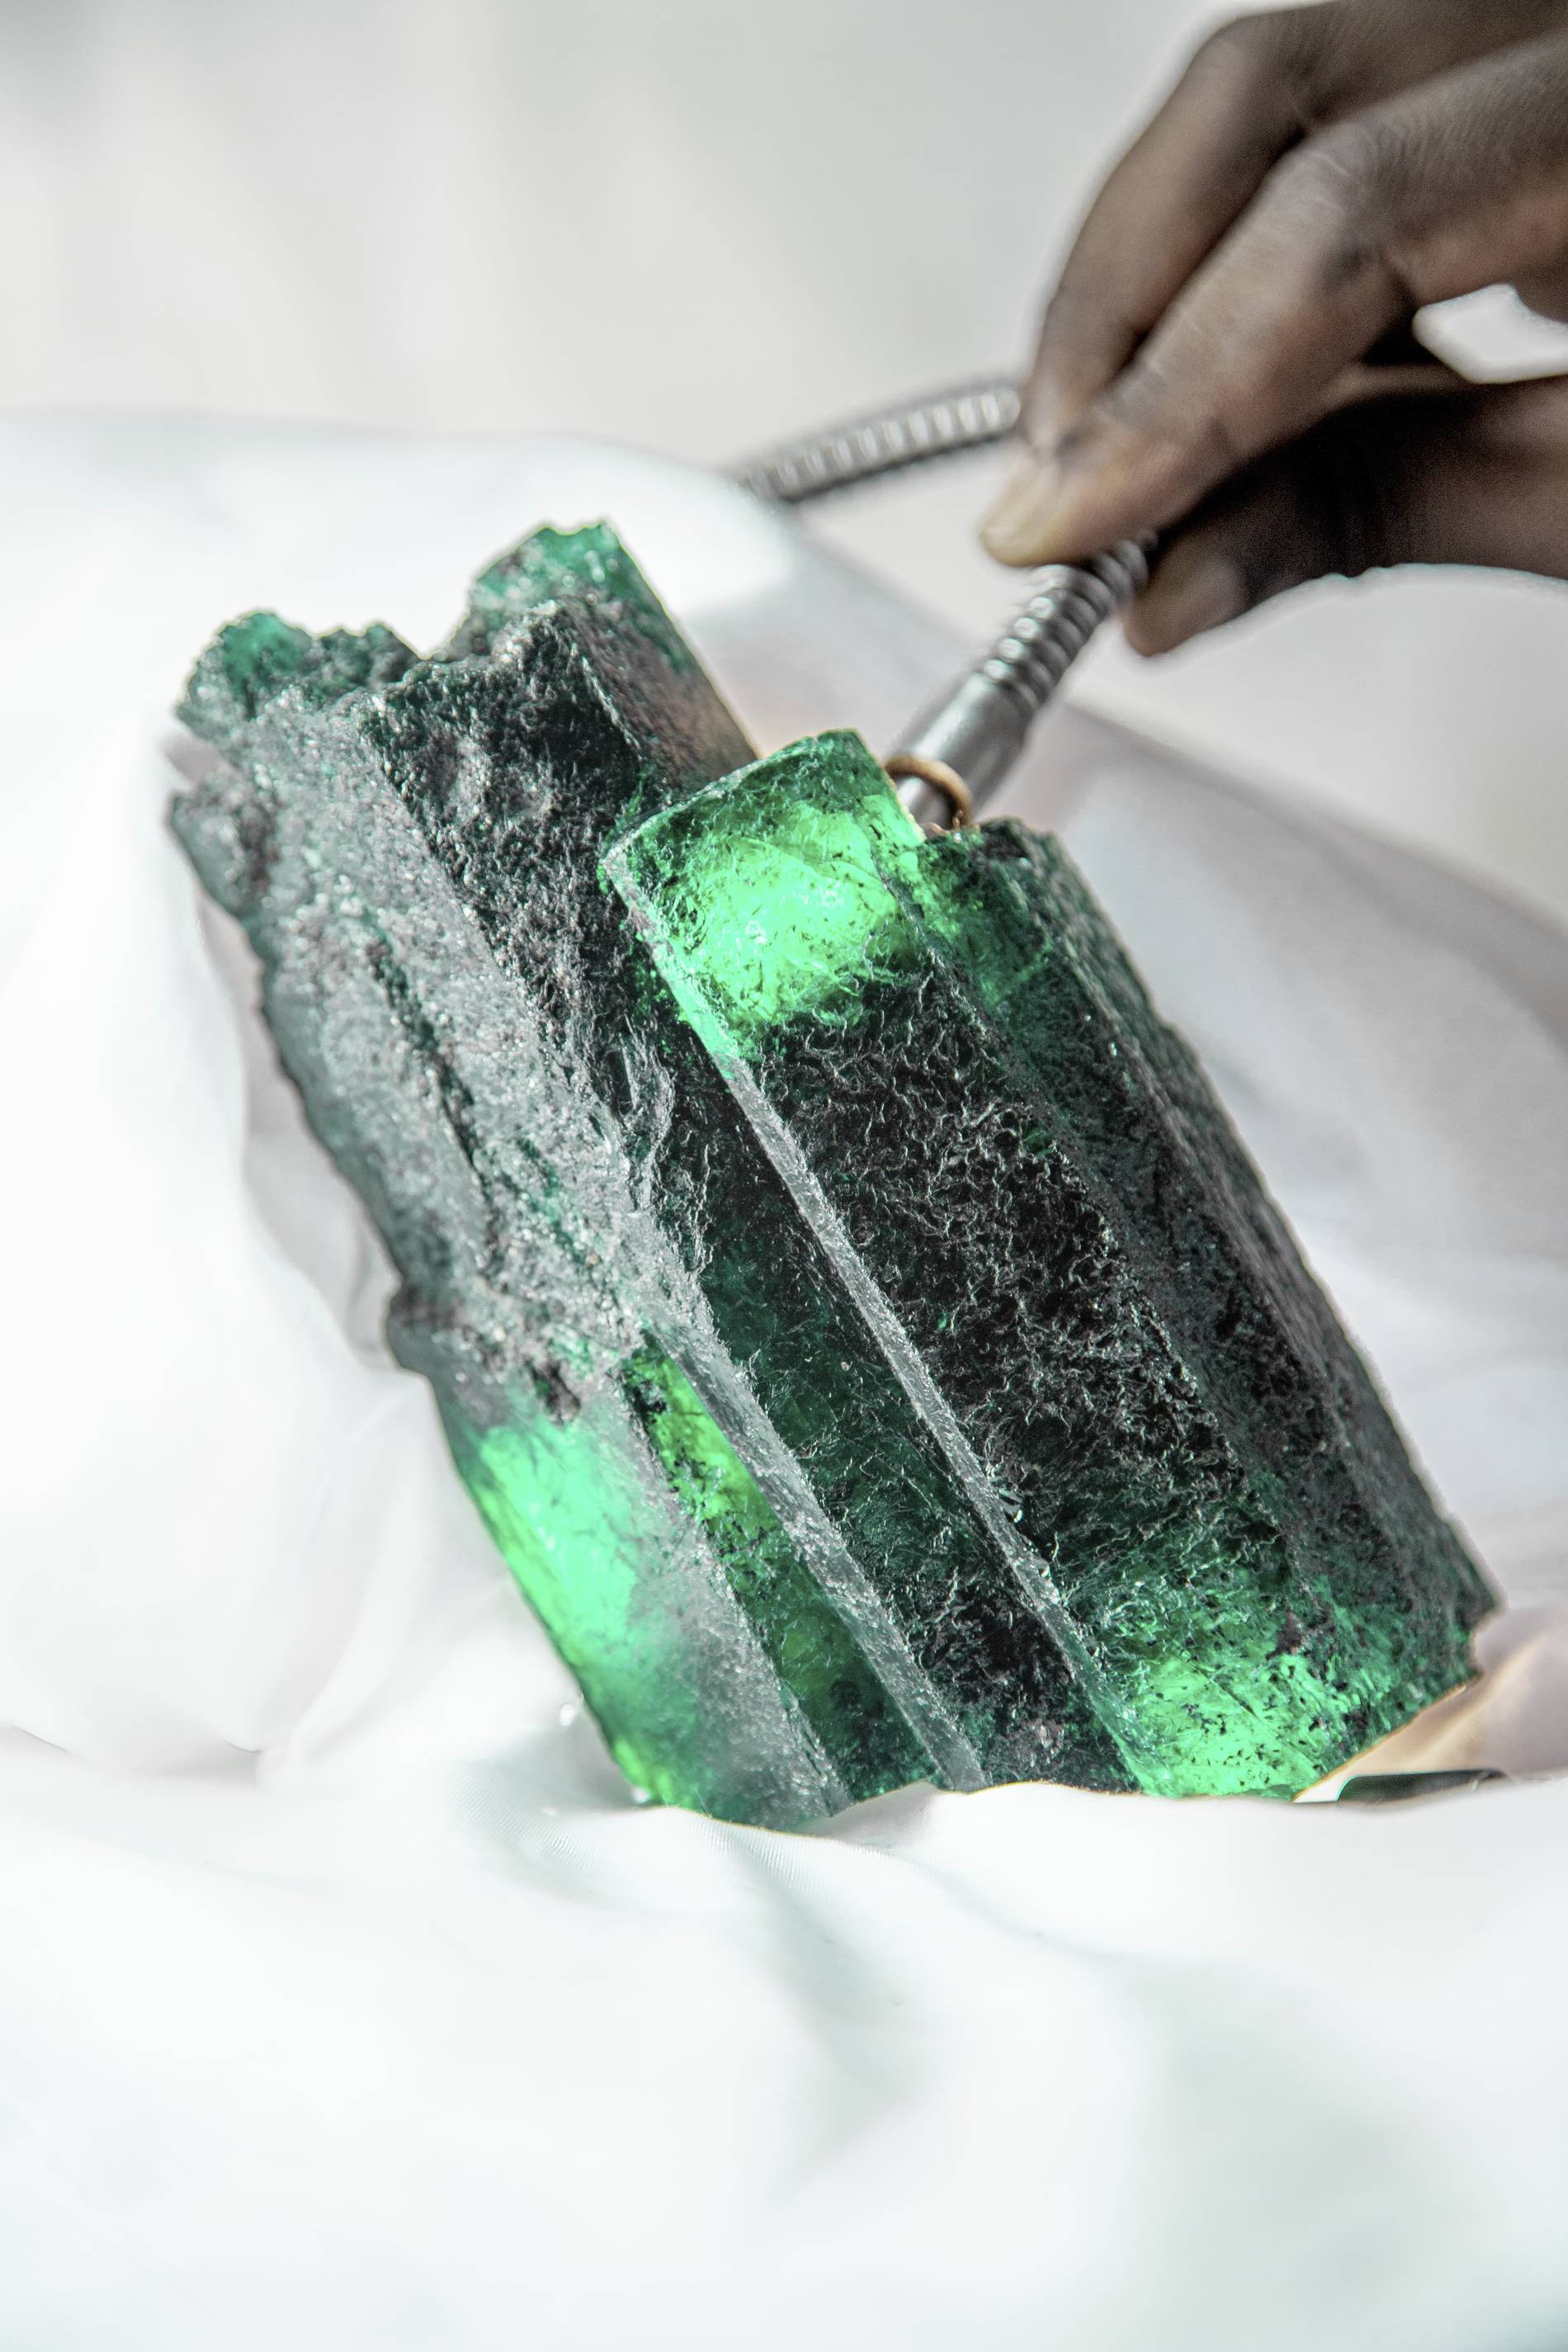 Gemfields' Chipembele emerald in full